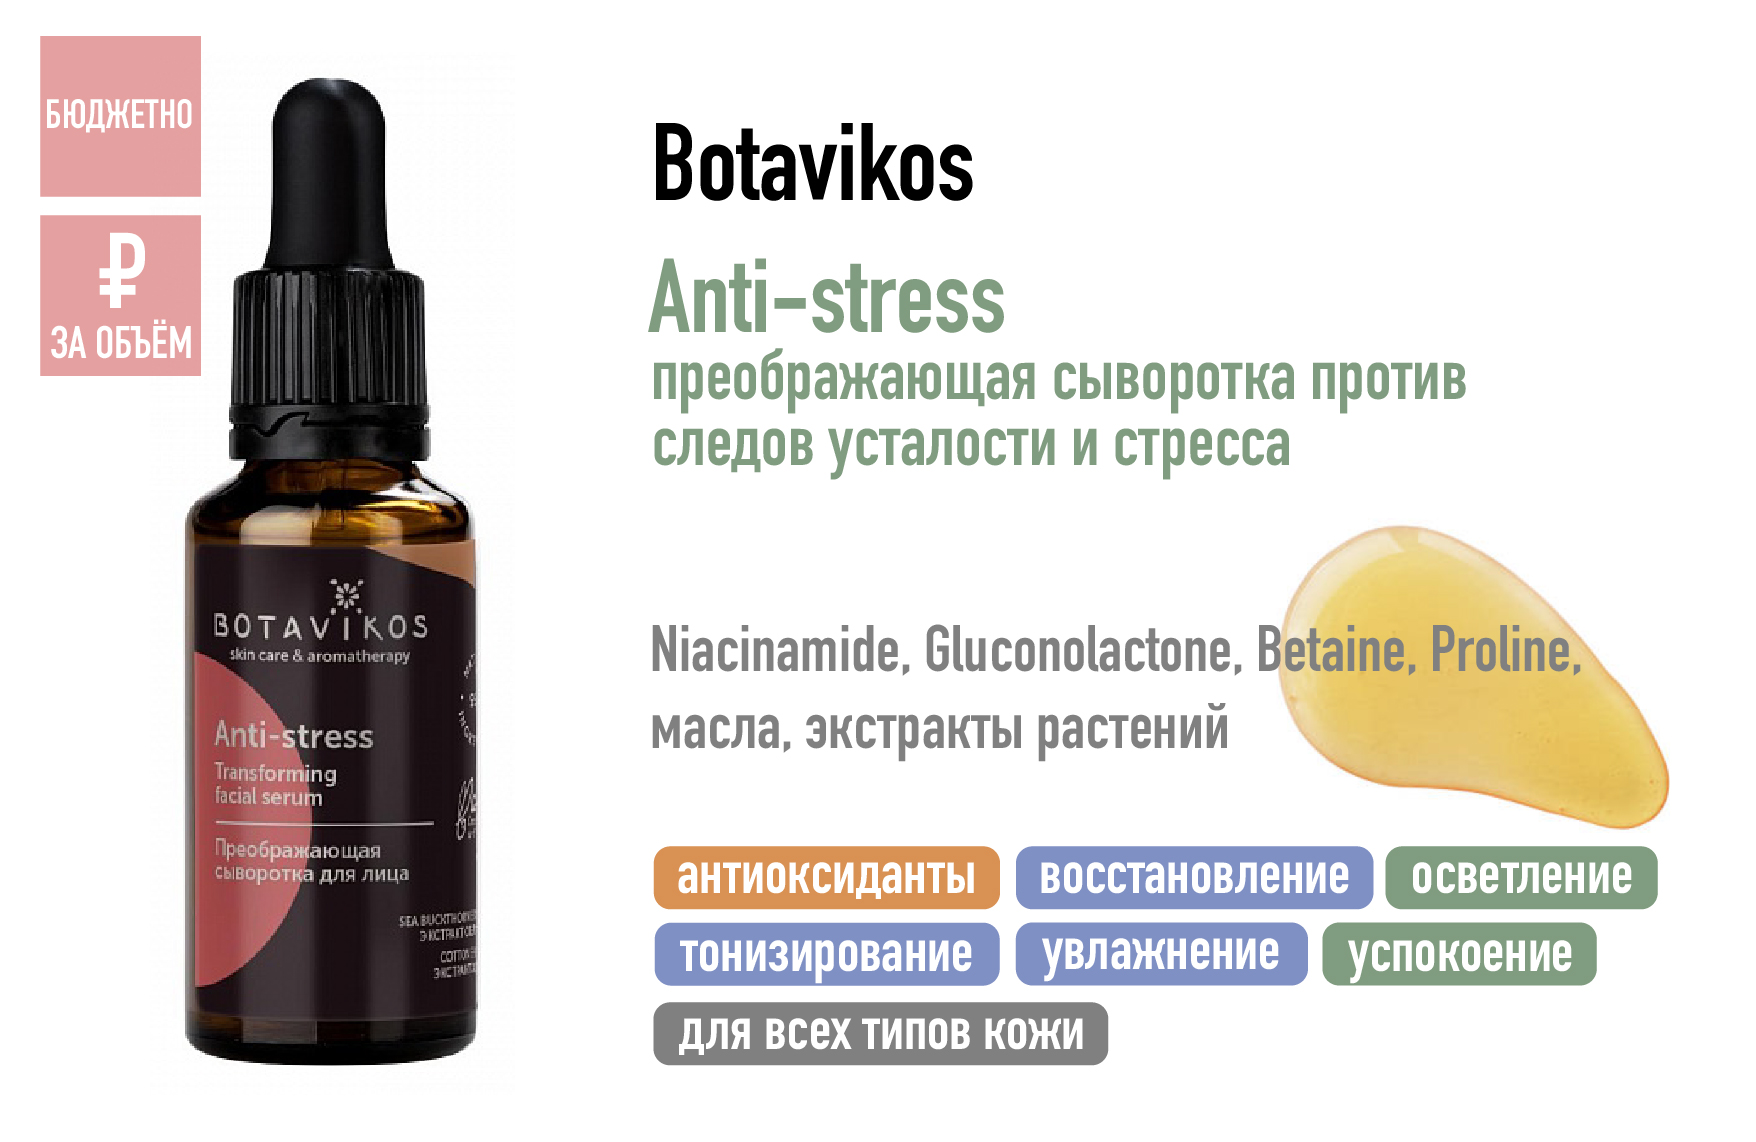 Botavikos Anti-stress / Преображающая сыворотка против следов усталости и стресса